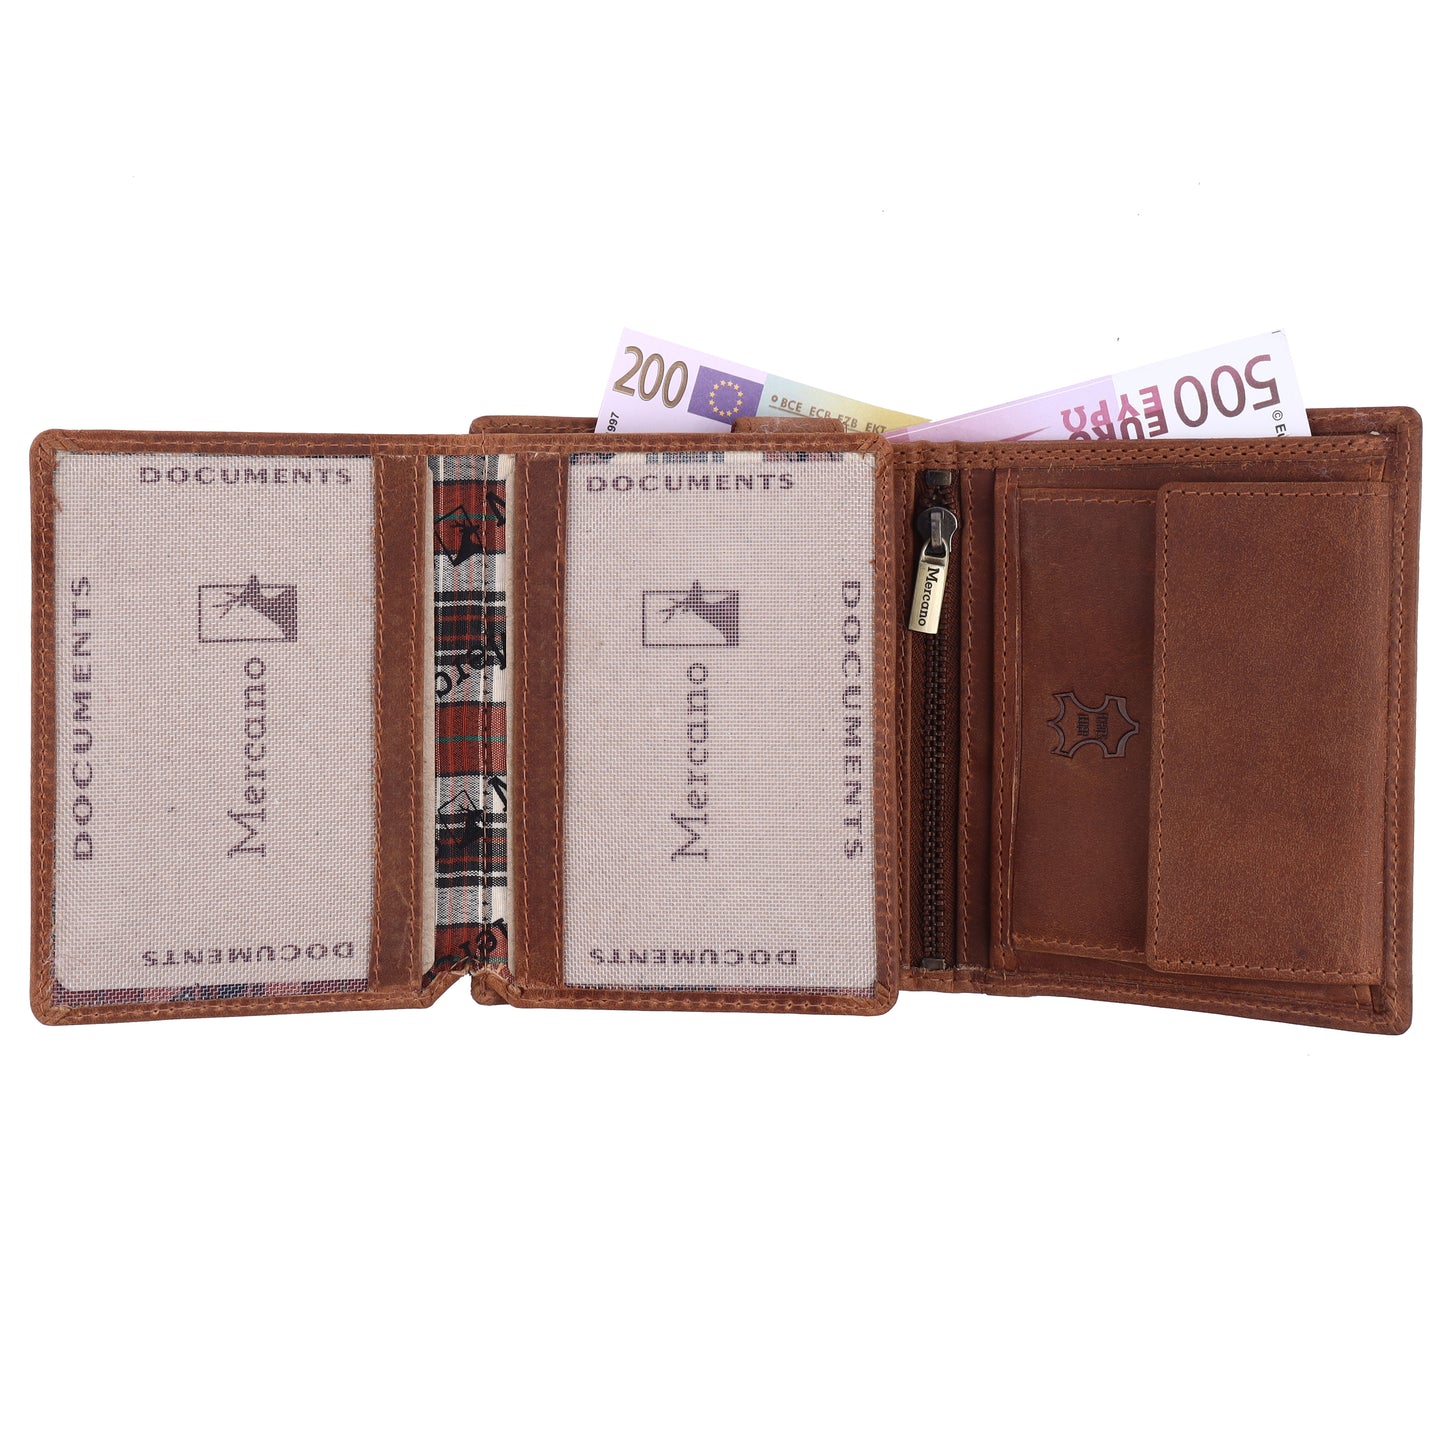 MERCANO® dunkelbraune Herren Geldbörse aus Leder mit RFID-Schutz | 16 Kartenfächern | 2 Scheinfächern | Münzfach